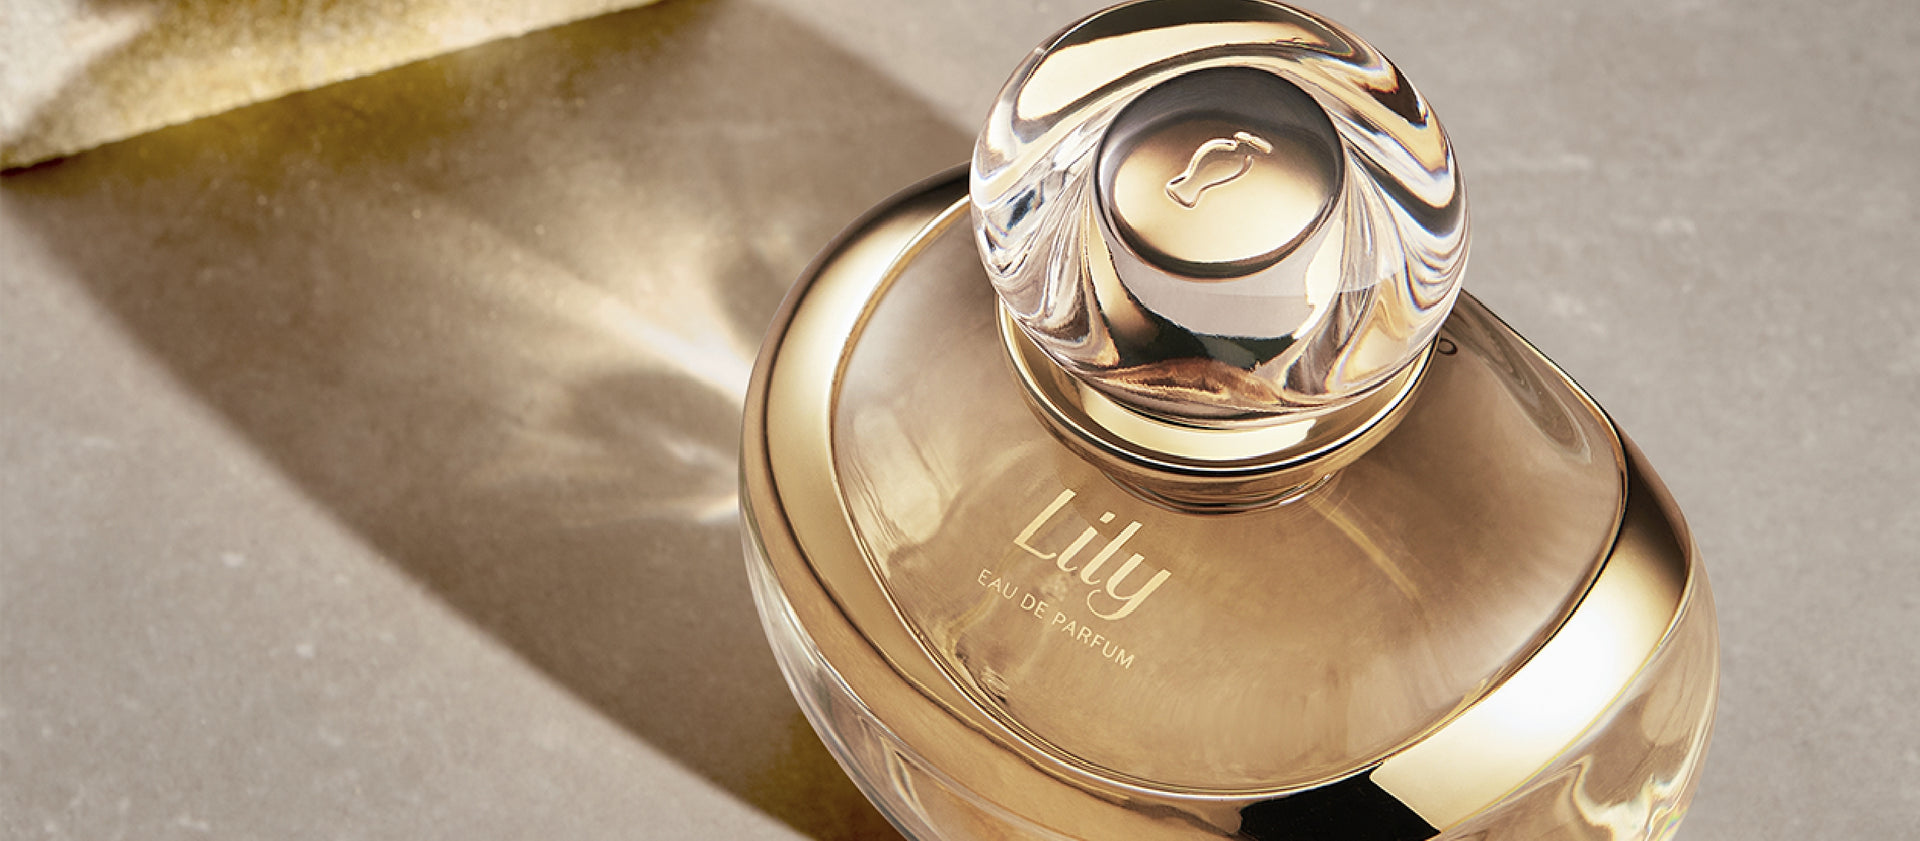 Lily Unique Eau de Parfum, Boticário, 75ml - latin-flavour